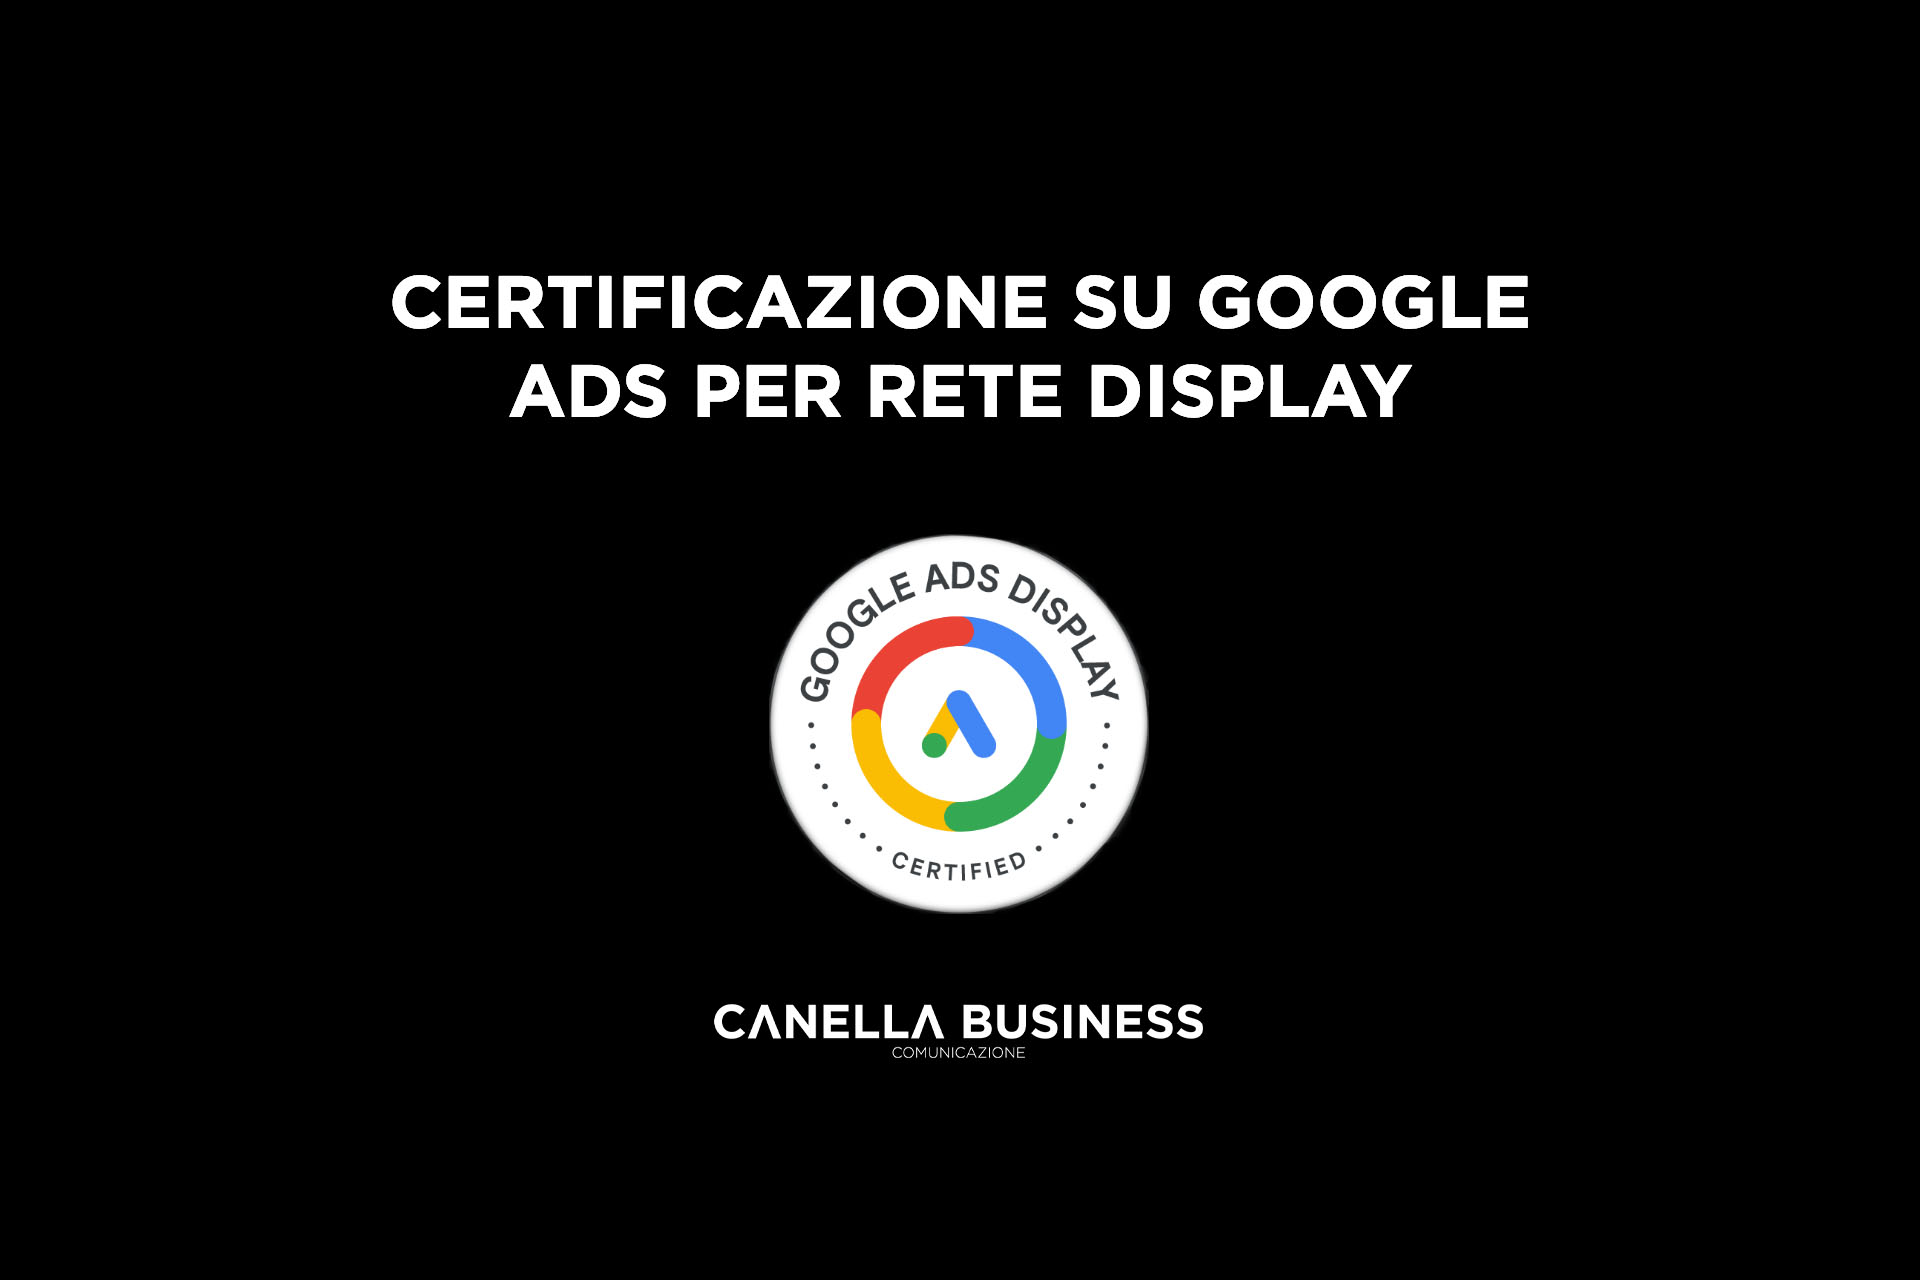 Certificazione Google Ads sulla pubblicità video